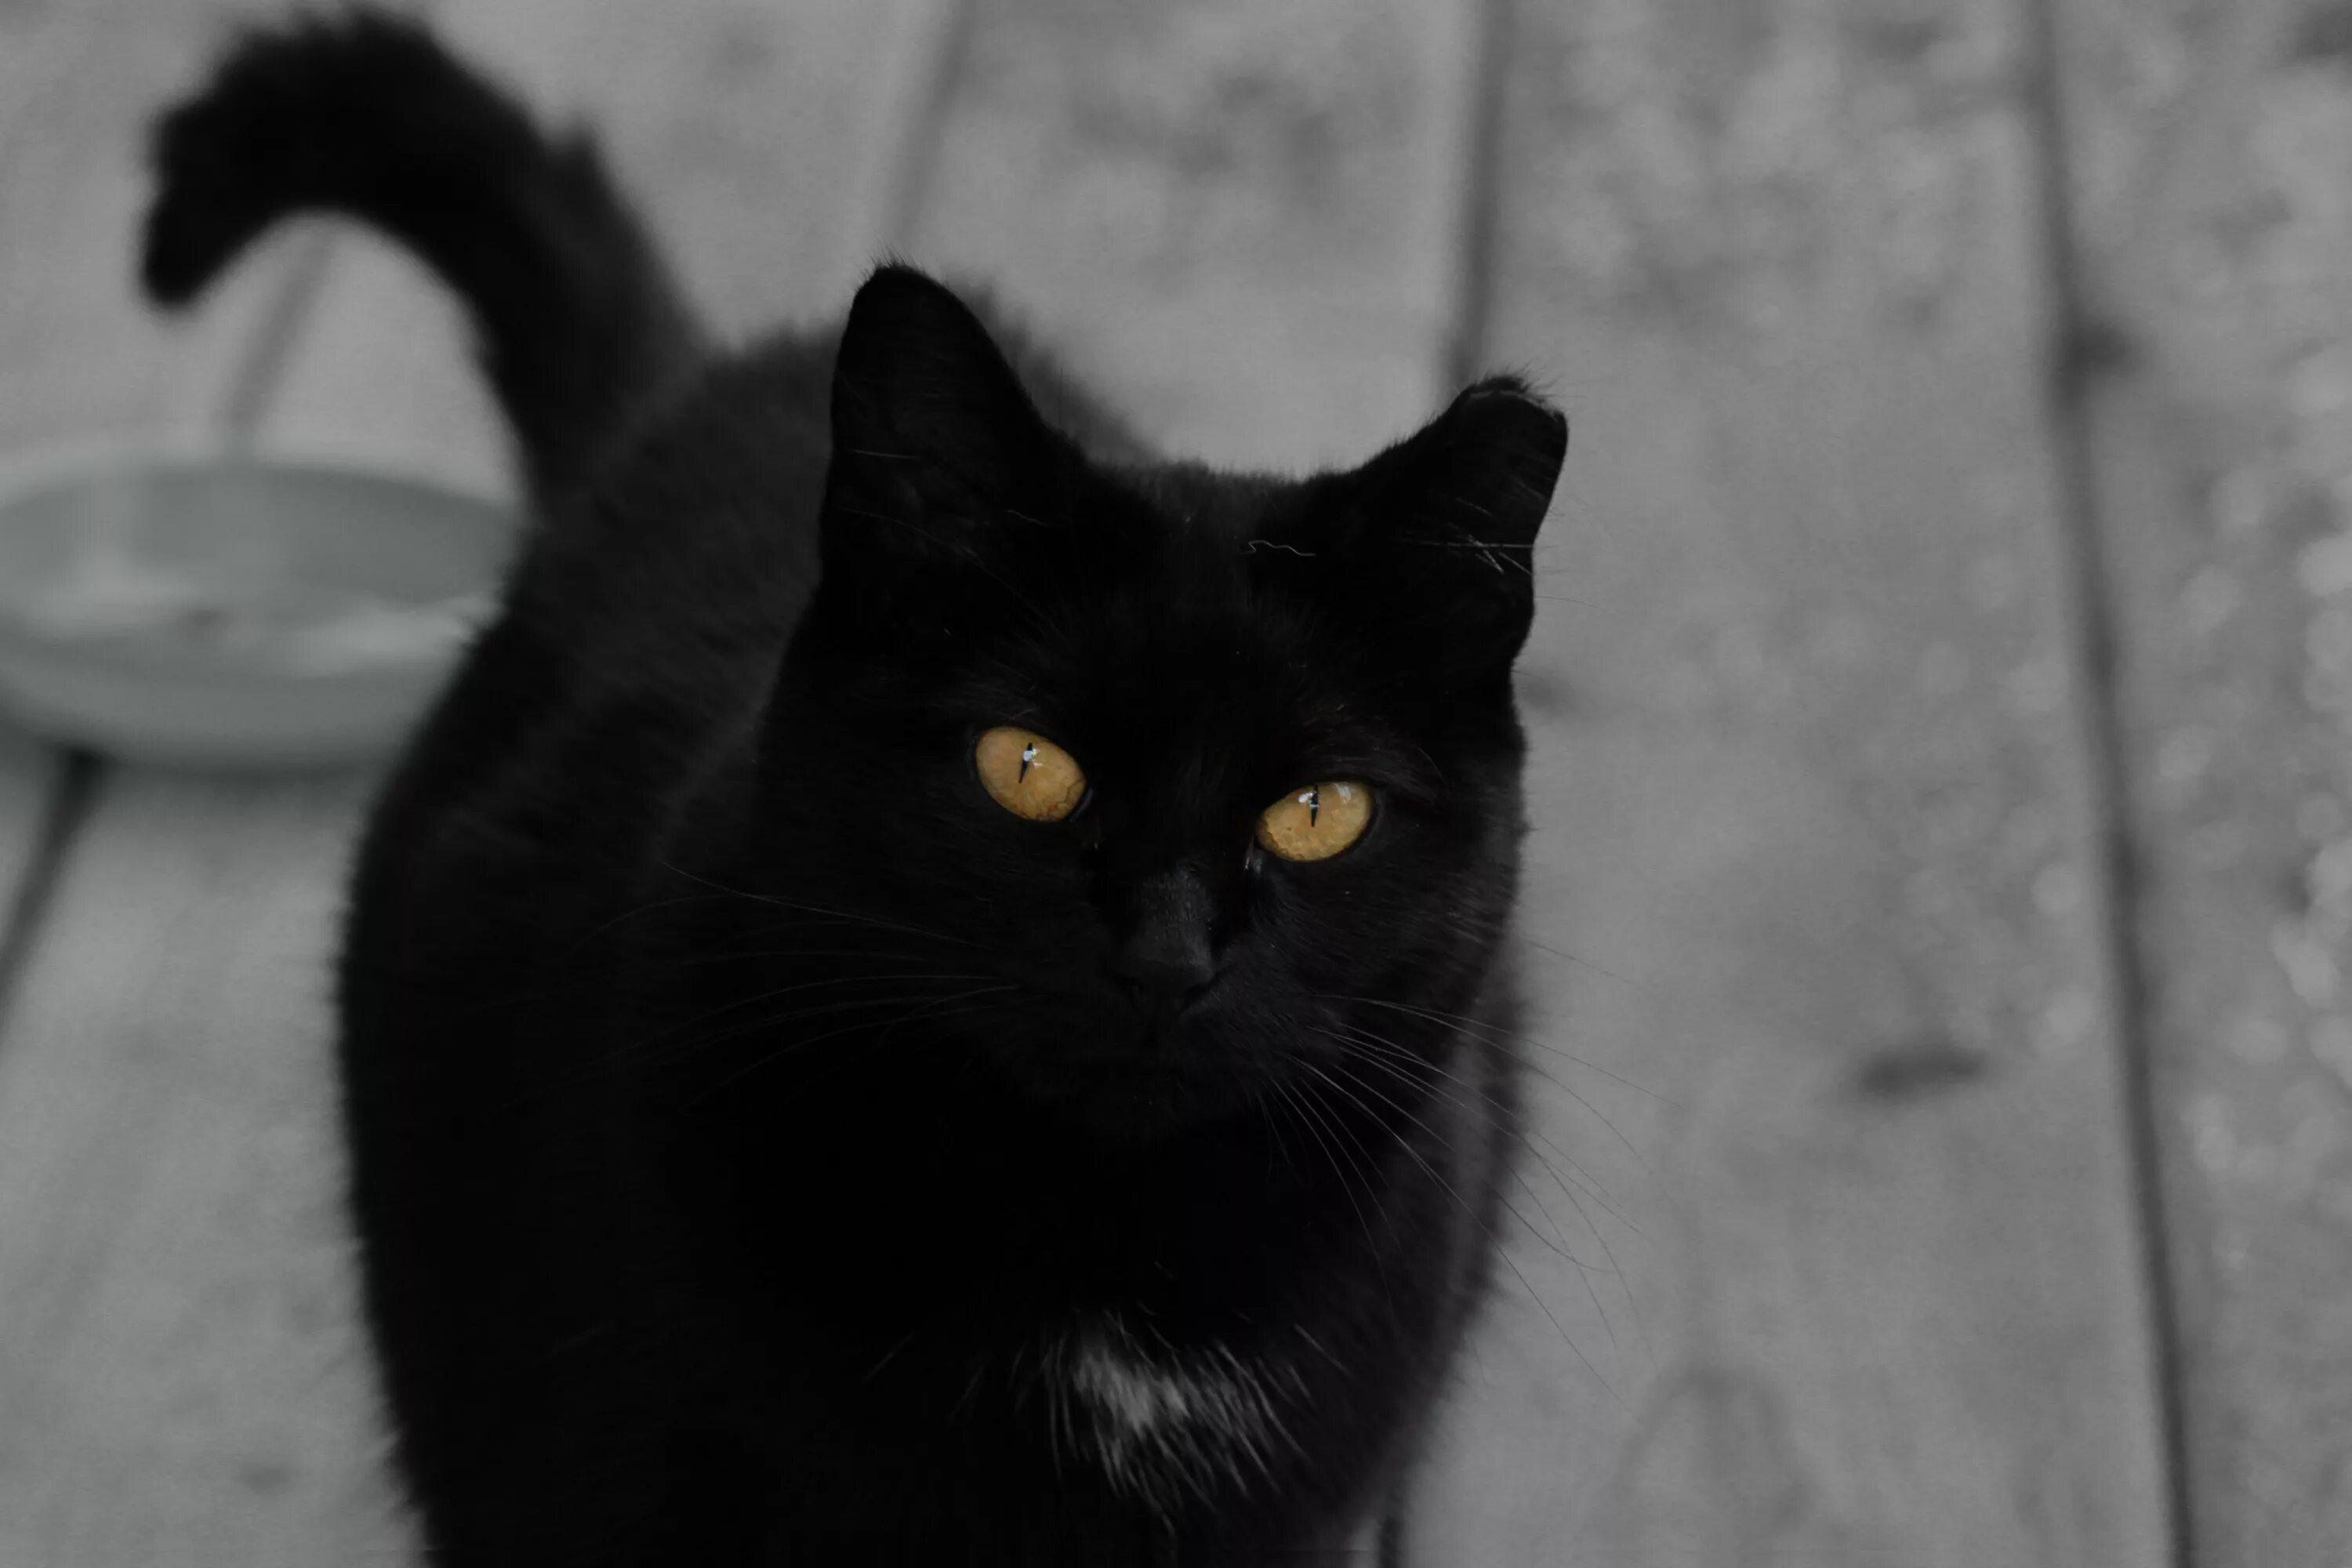 Порода черной кошки с желтыми глазами. Бомбейская кошка. Британская Бомбейская кошка. Британская короткошёрстная кошка черная. Богемская кошка чёрная.